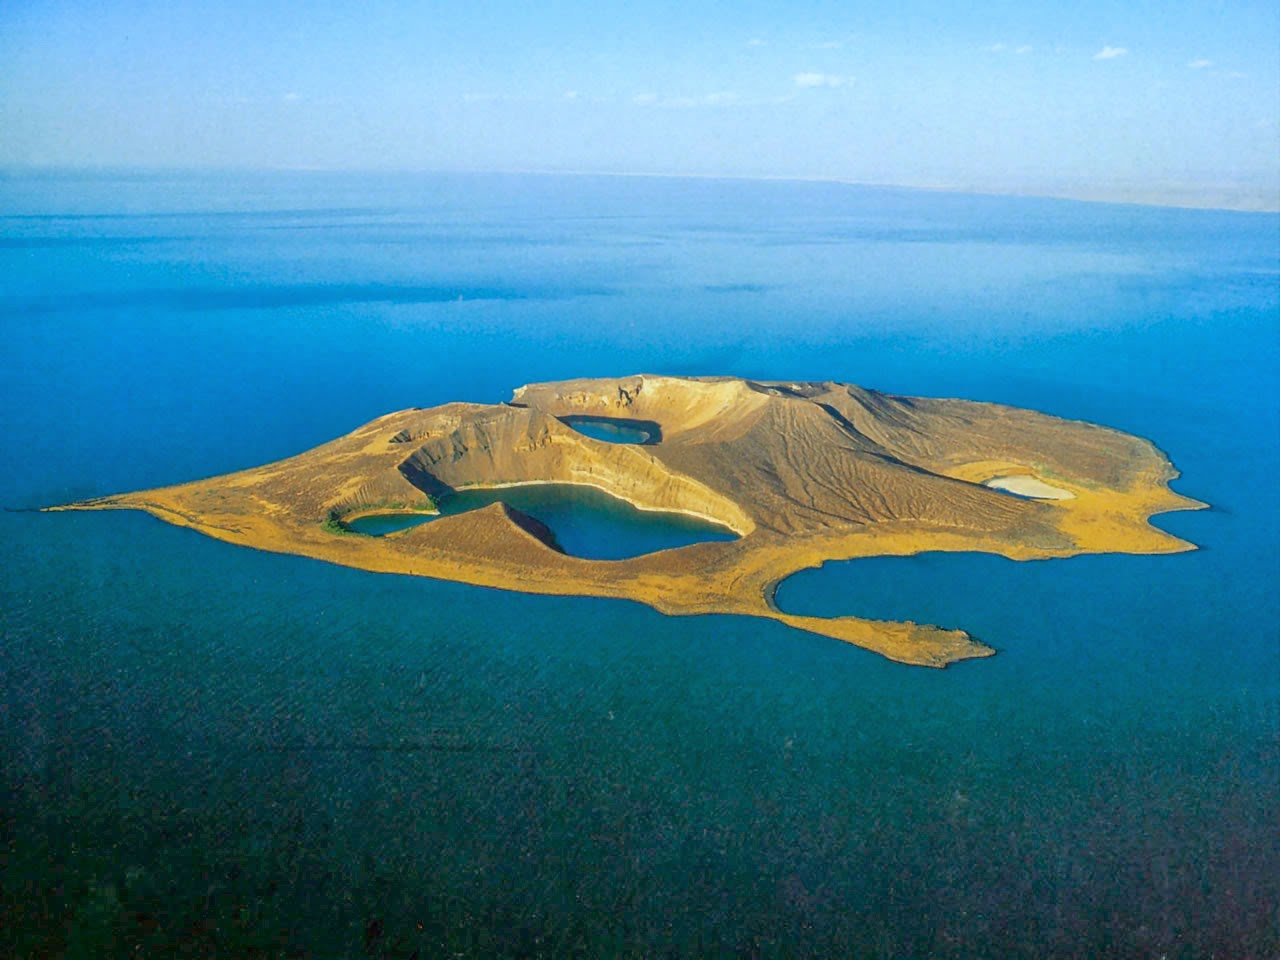 Unidentified island in Lake Turkana.